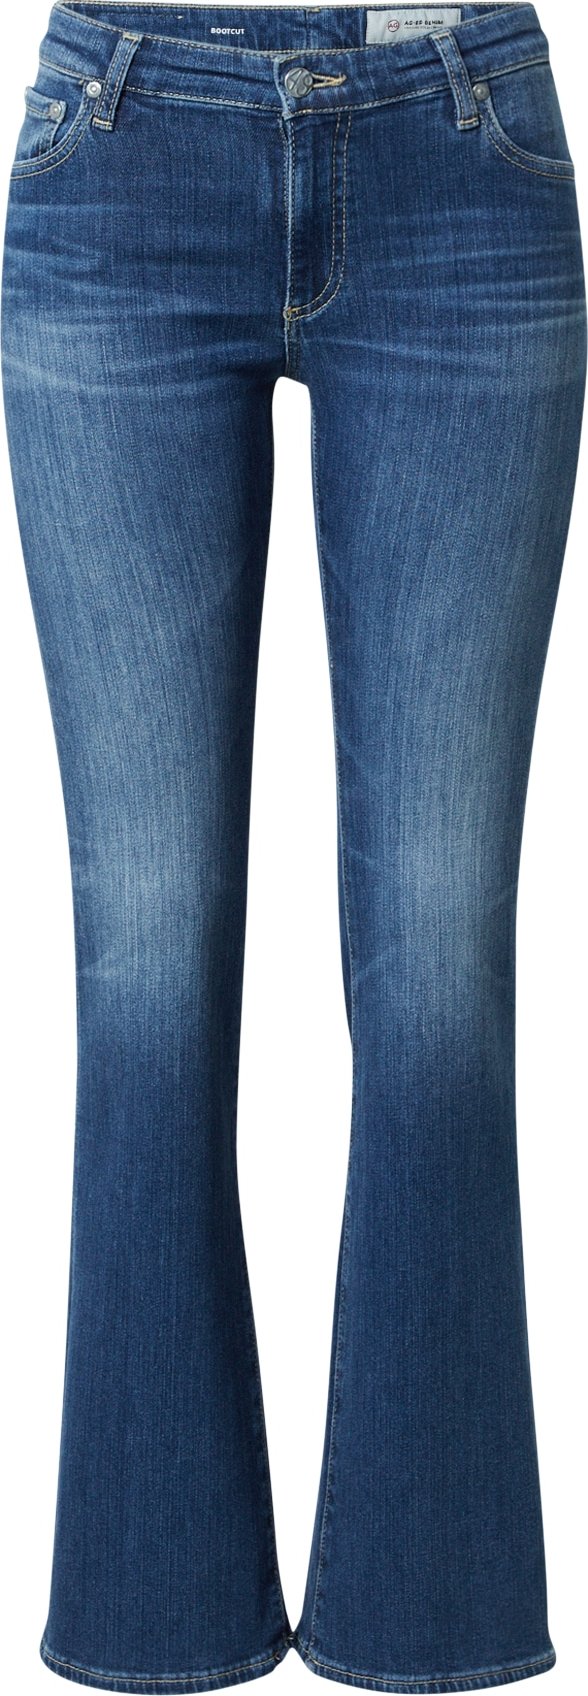 AG Jeans Jeans modrá džínovina